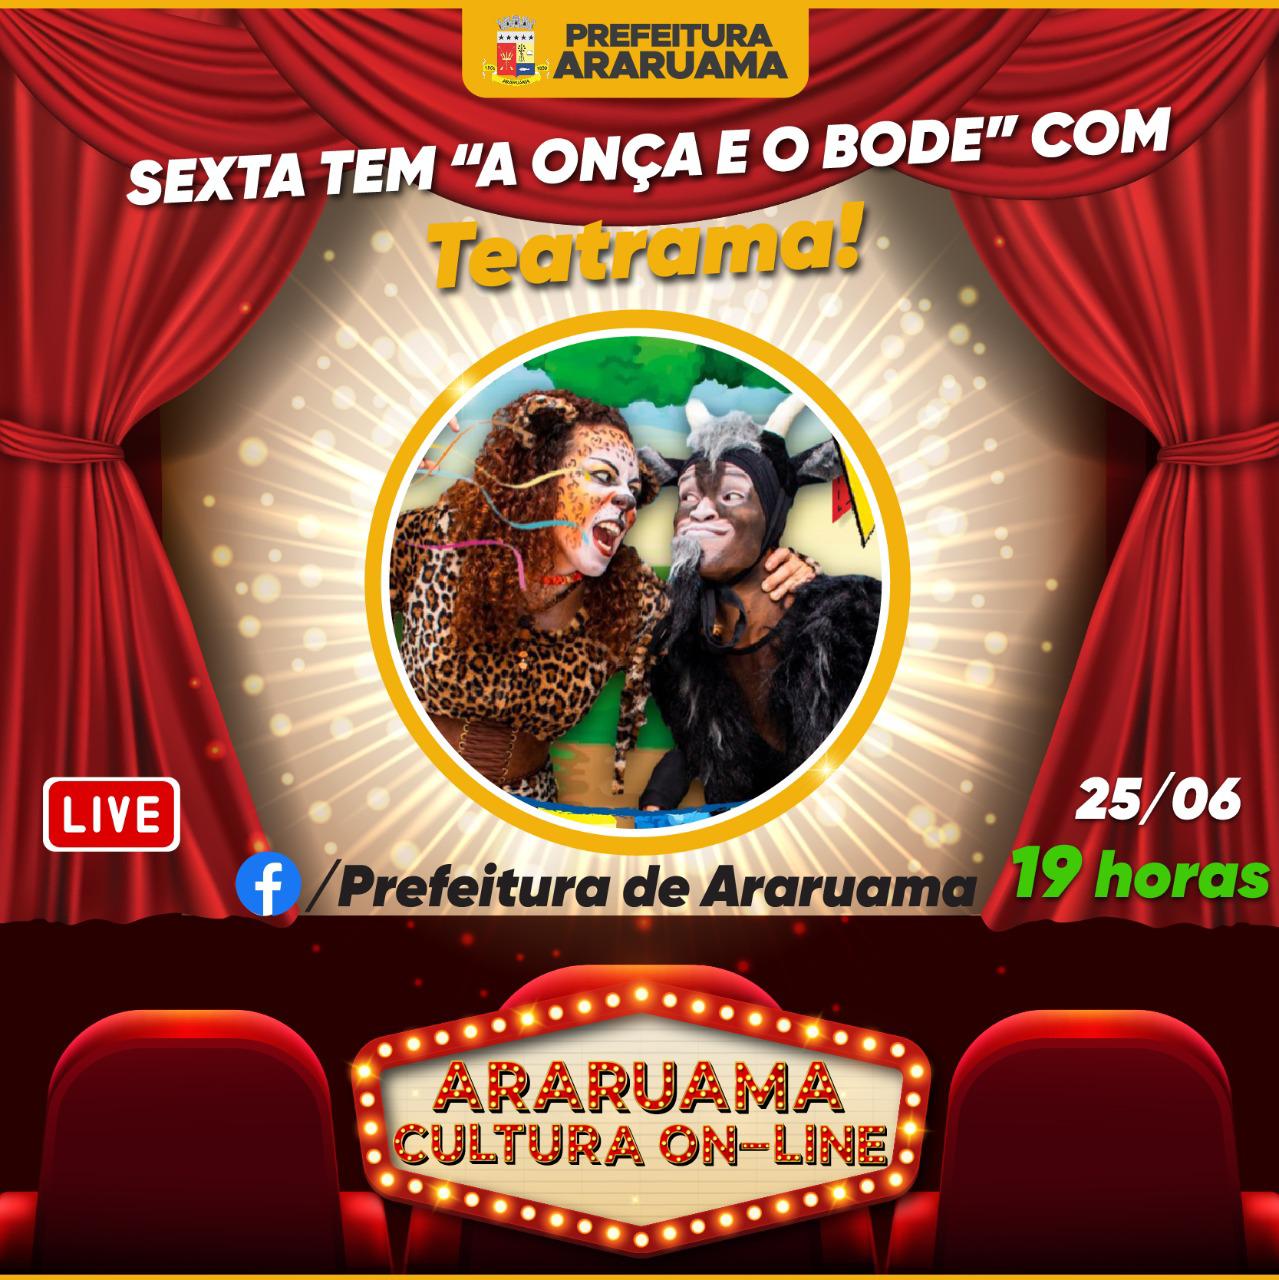 Grupo Teatrama vai brilhar no palco do “Araruama Cultura On-line”, nessa sexta-feira